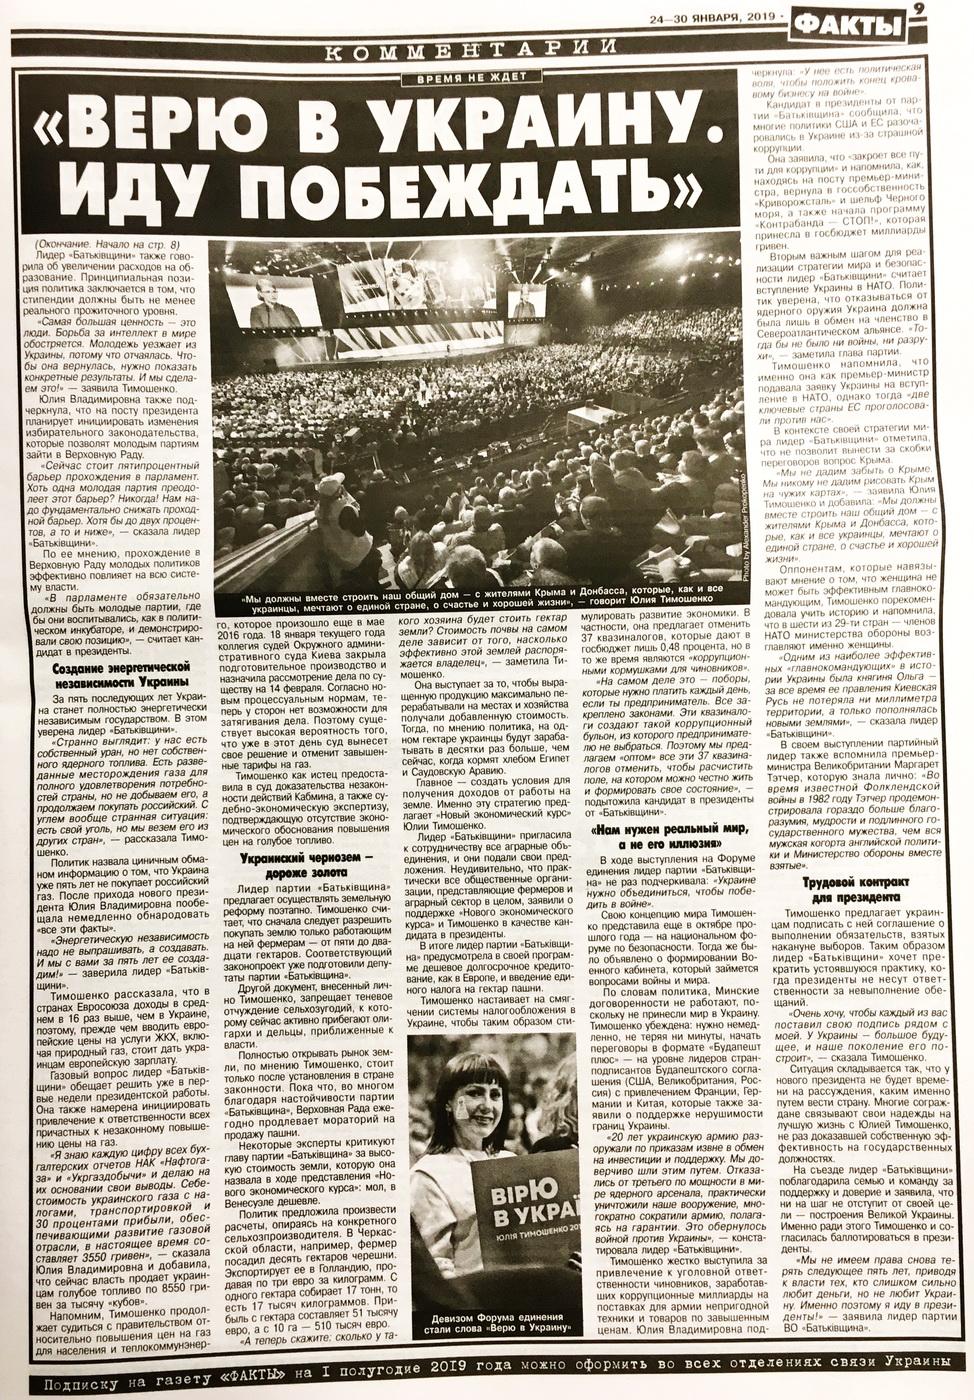 28 01 2019 Kyiv gazety dzynsa tymoshenko3